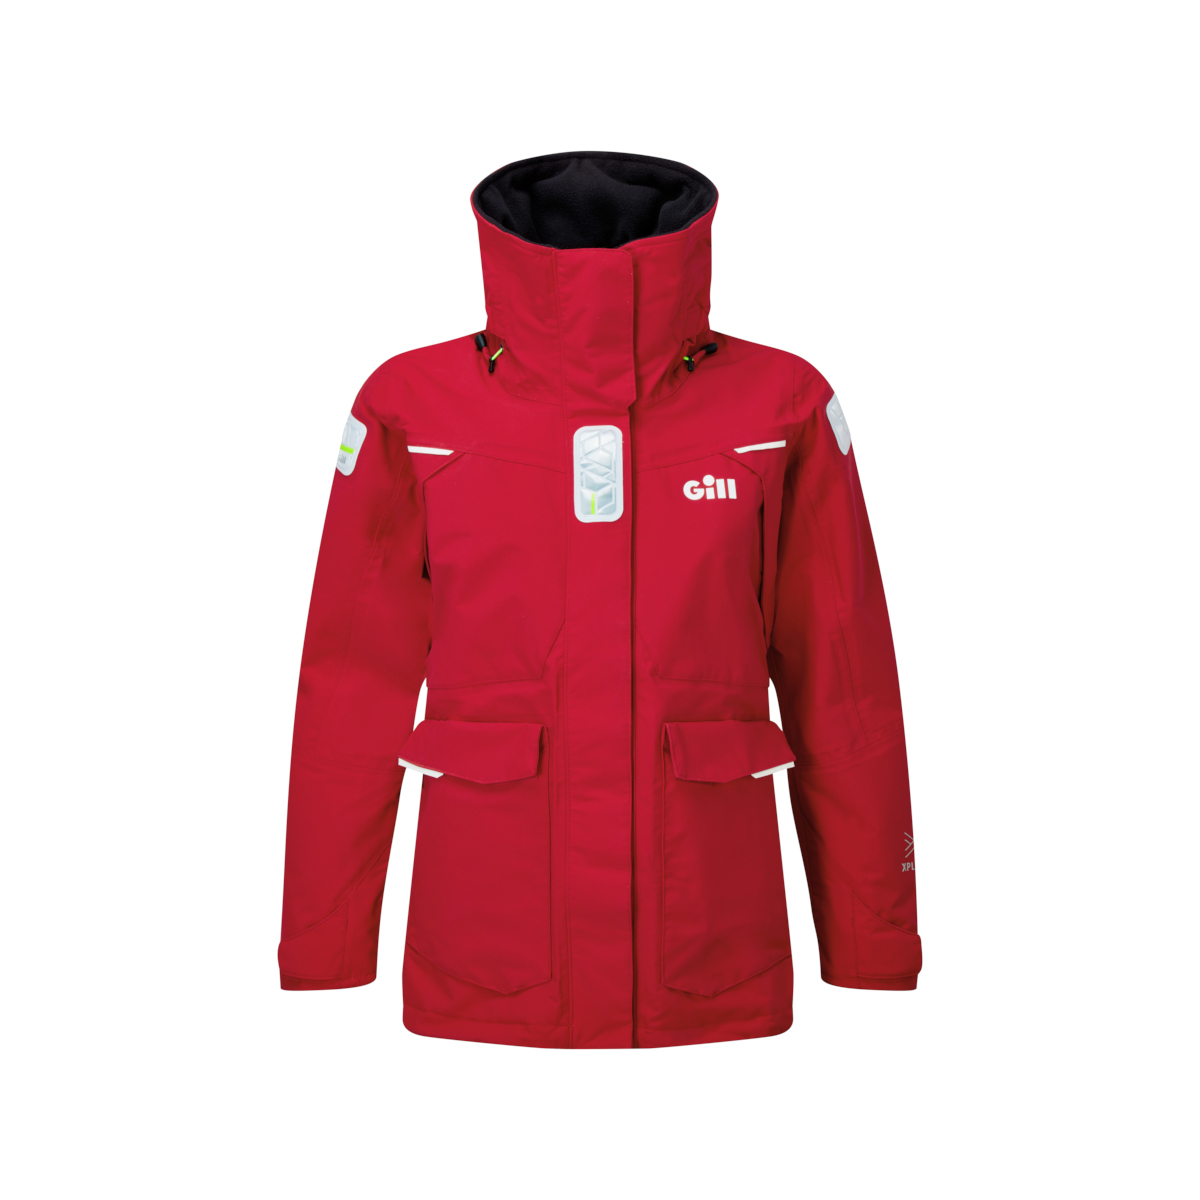 Gill OS25 veste de voile offshore femme rouge, taille 8